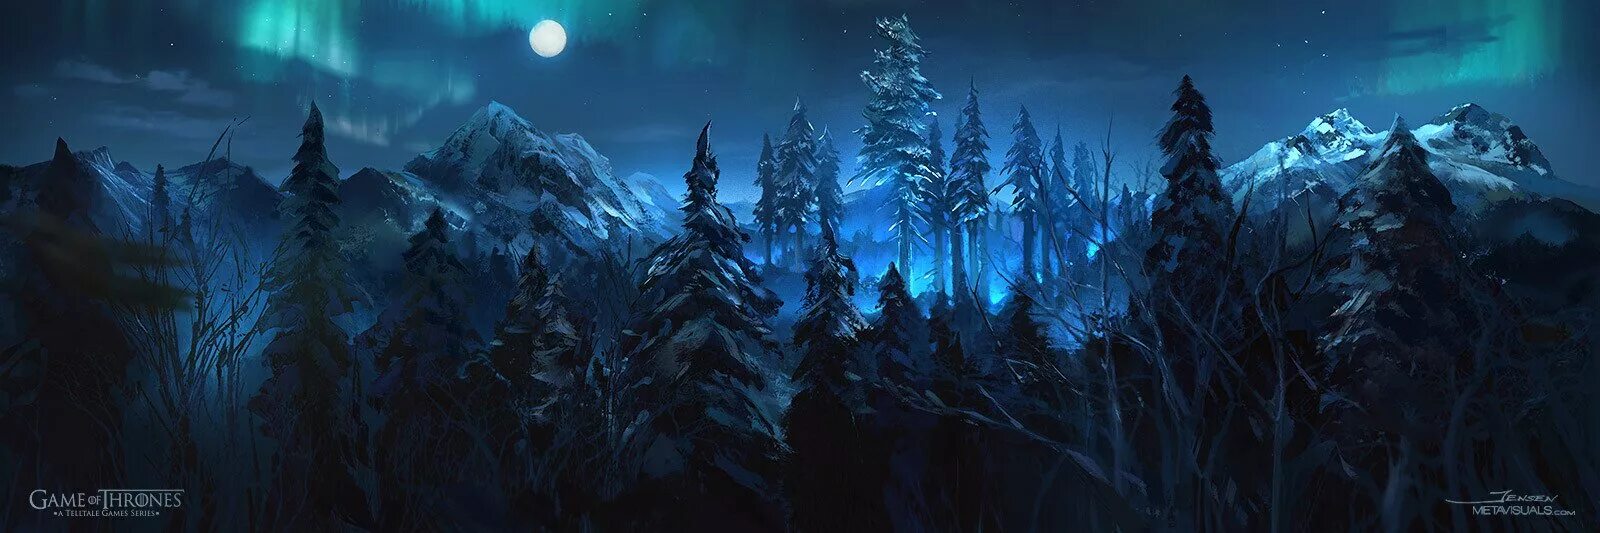 Зимний лес игры престолов. Лес из игры. Игра Зачарованный лес.